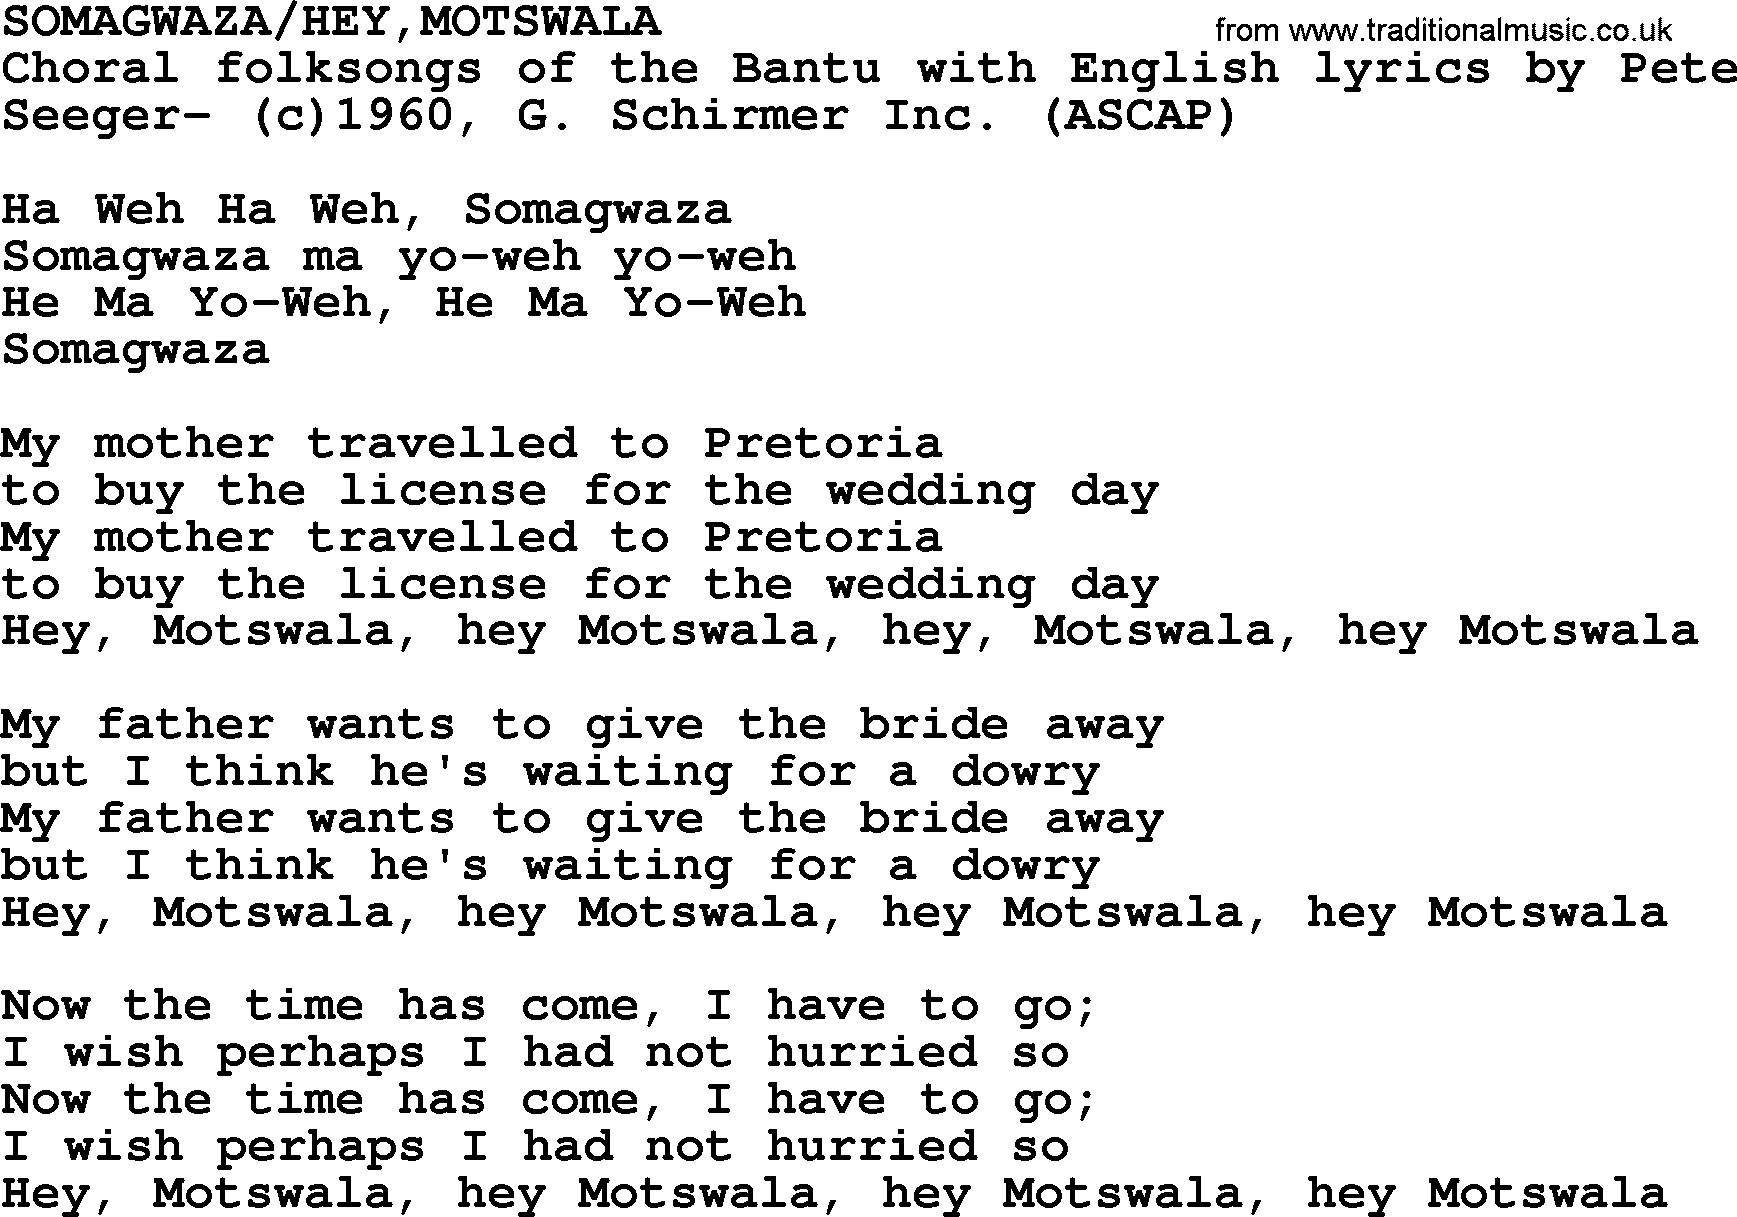 Peter, Paul and Mary song Somagwazahey,motswala lyrics